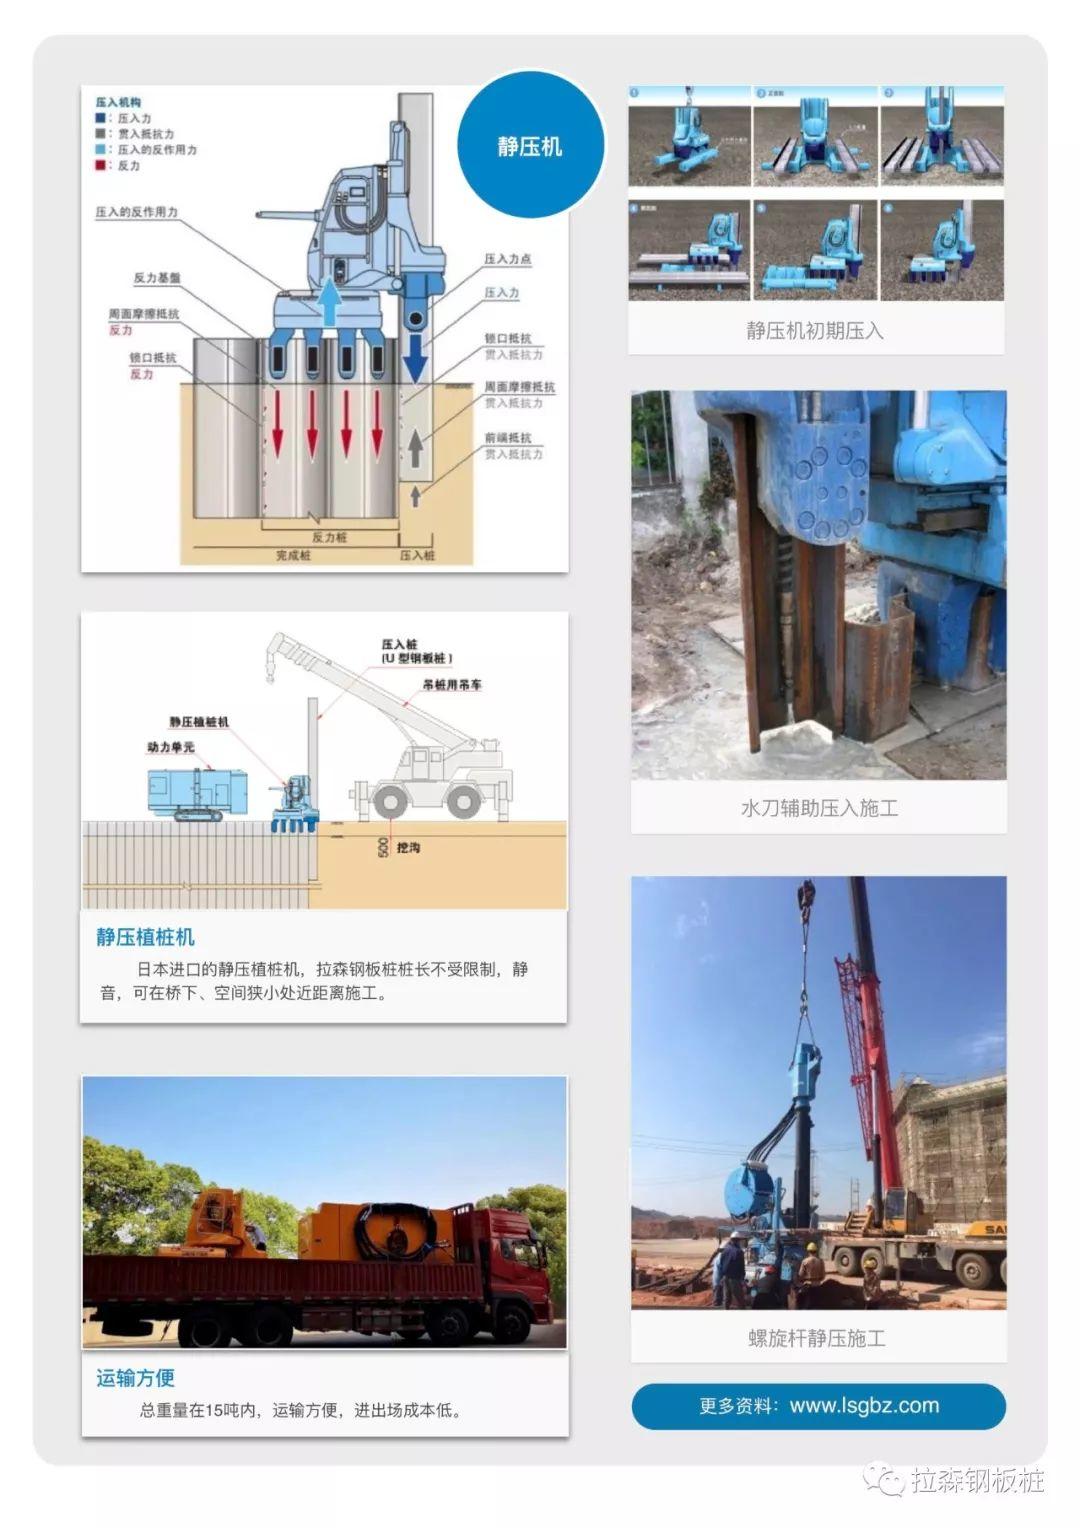 18m挖机打桩机工作装置的设计与应用